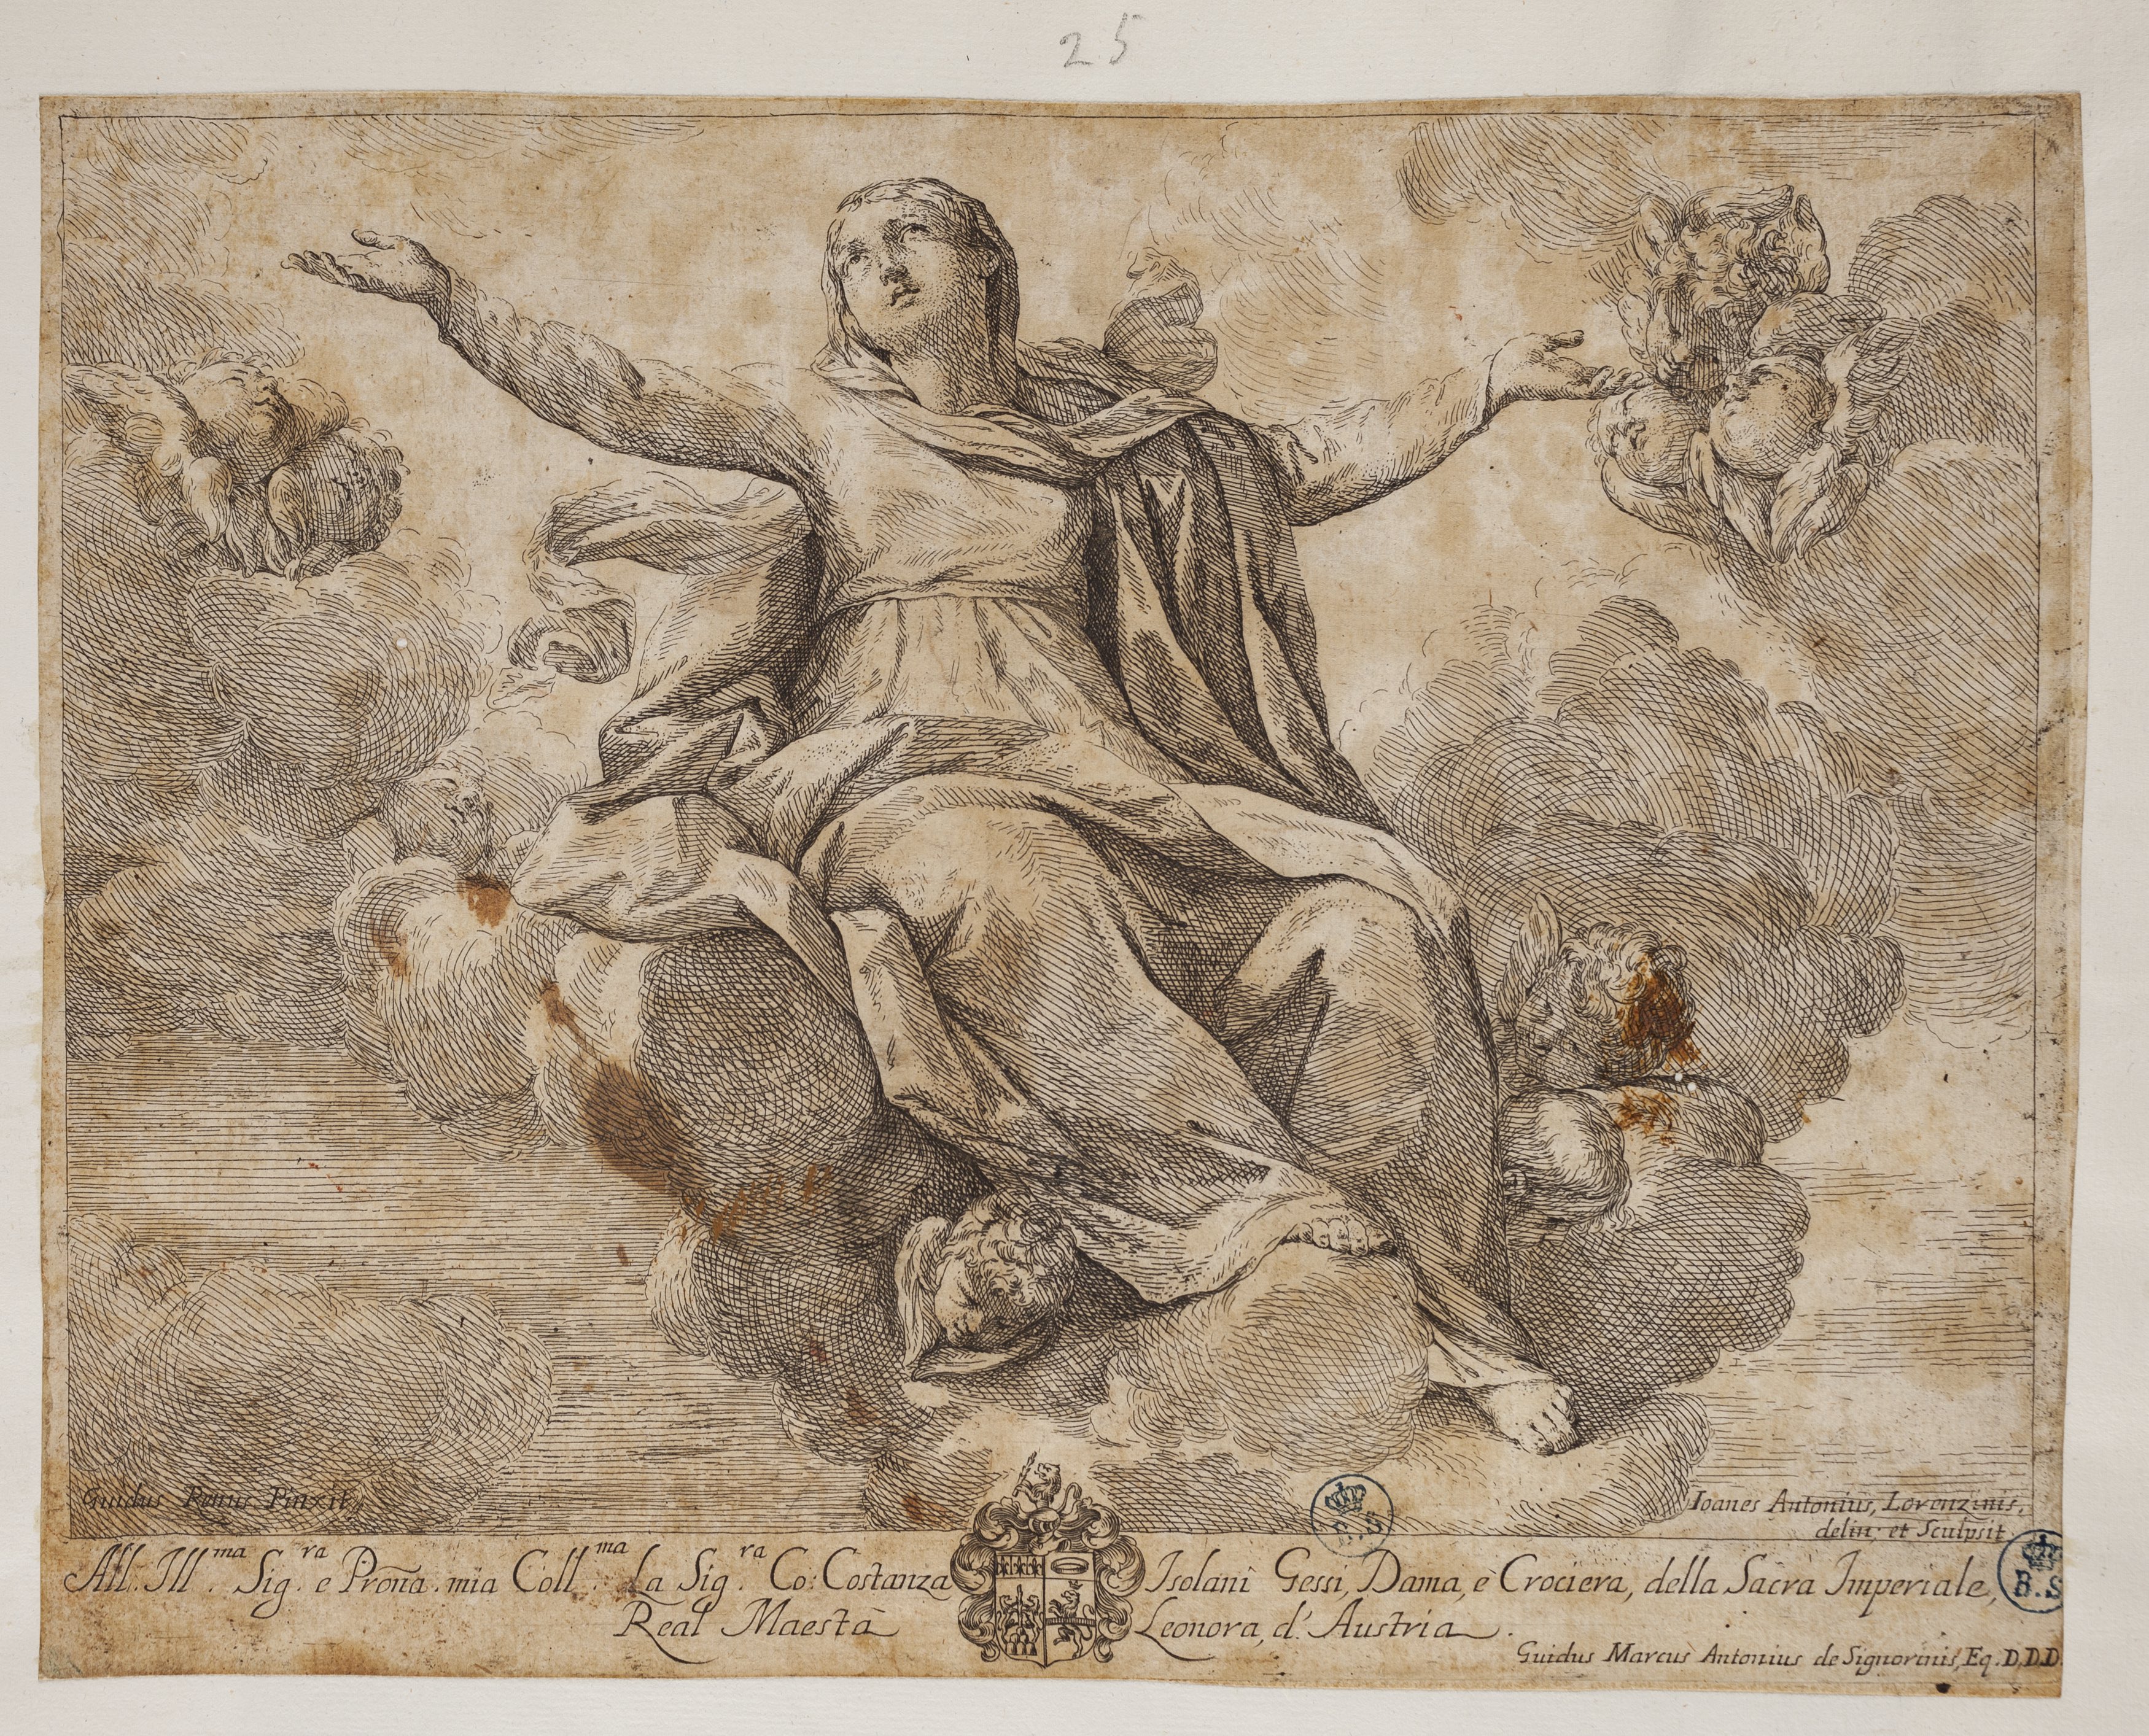 Assunzione della Vergine, Assunzione della Vergine (stampa controfondata smarginata tagliata) di Guido Reni, Giovanni Antonio Lorenzini (metà/ metà XVII-XVIII)